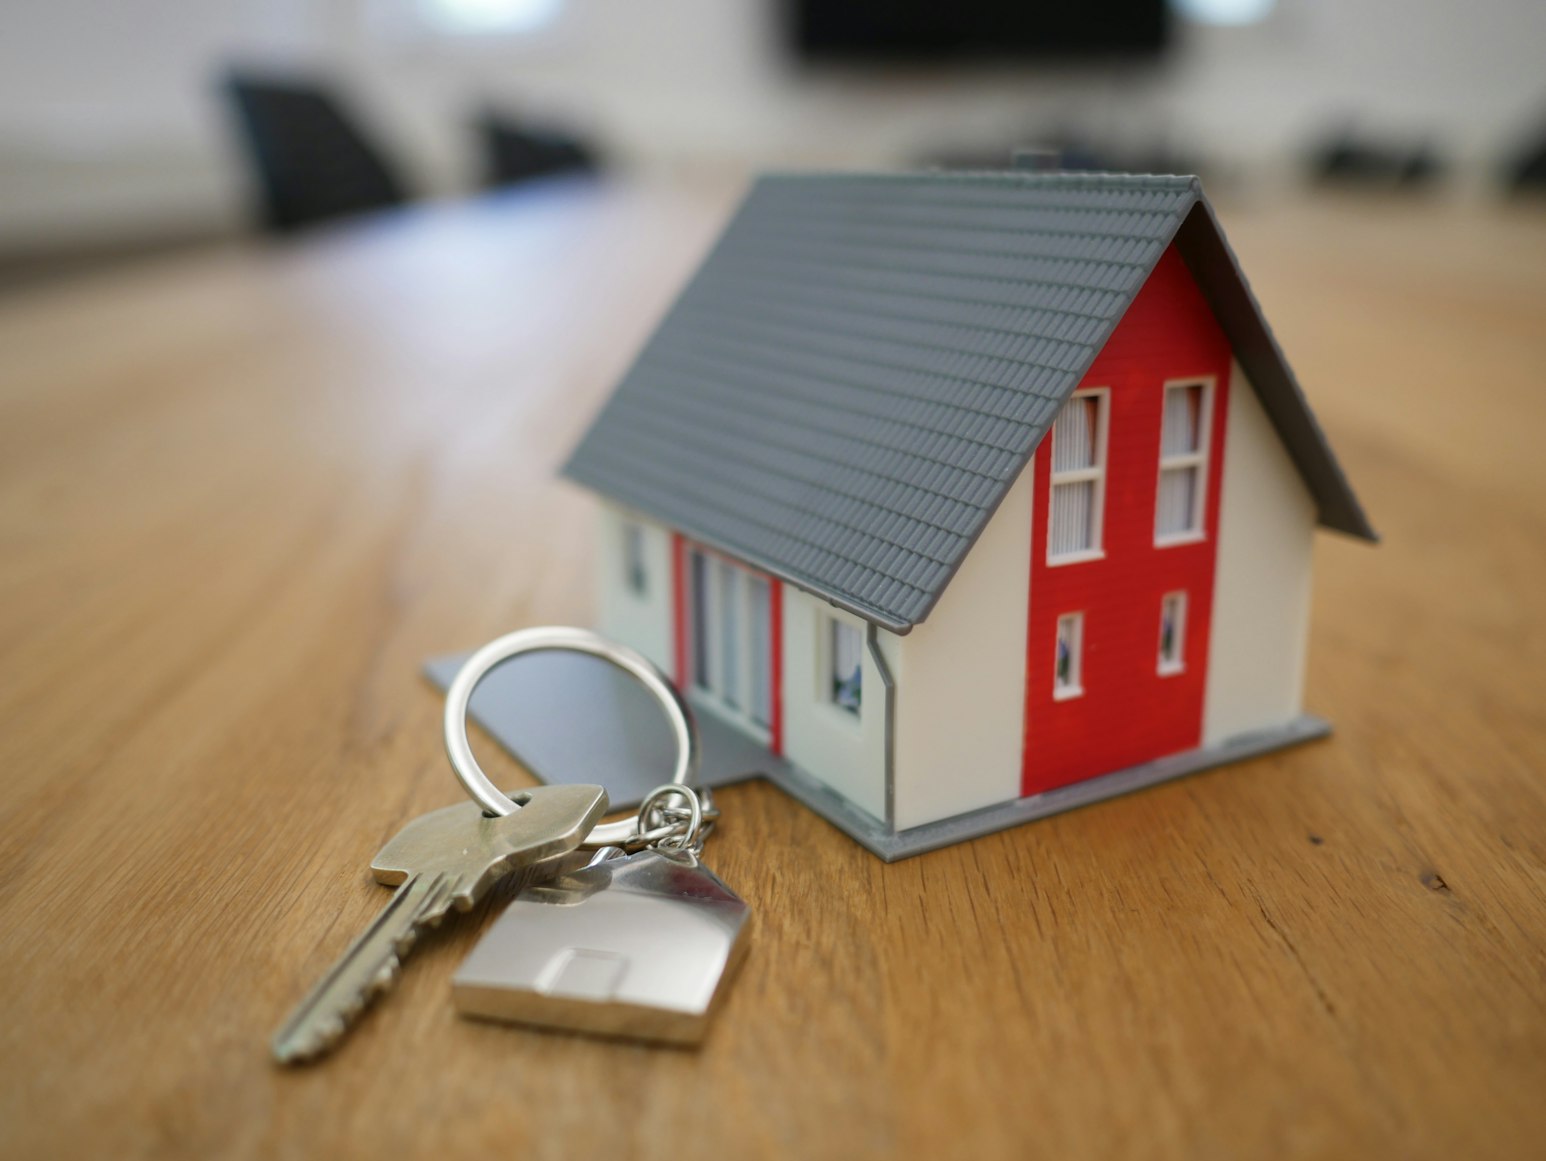 Keys next to a miniature house.